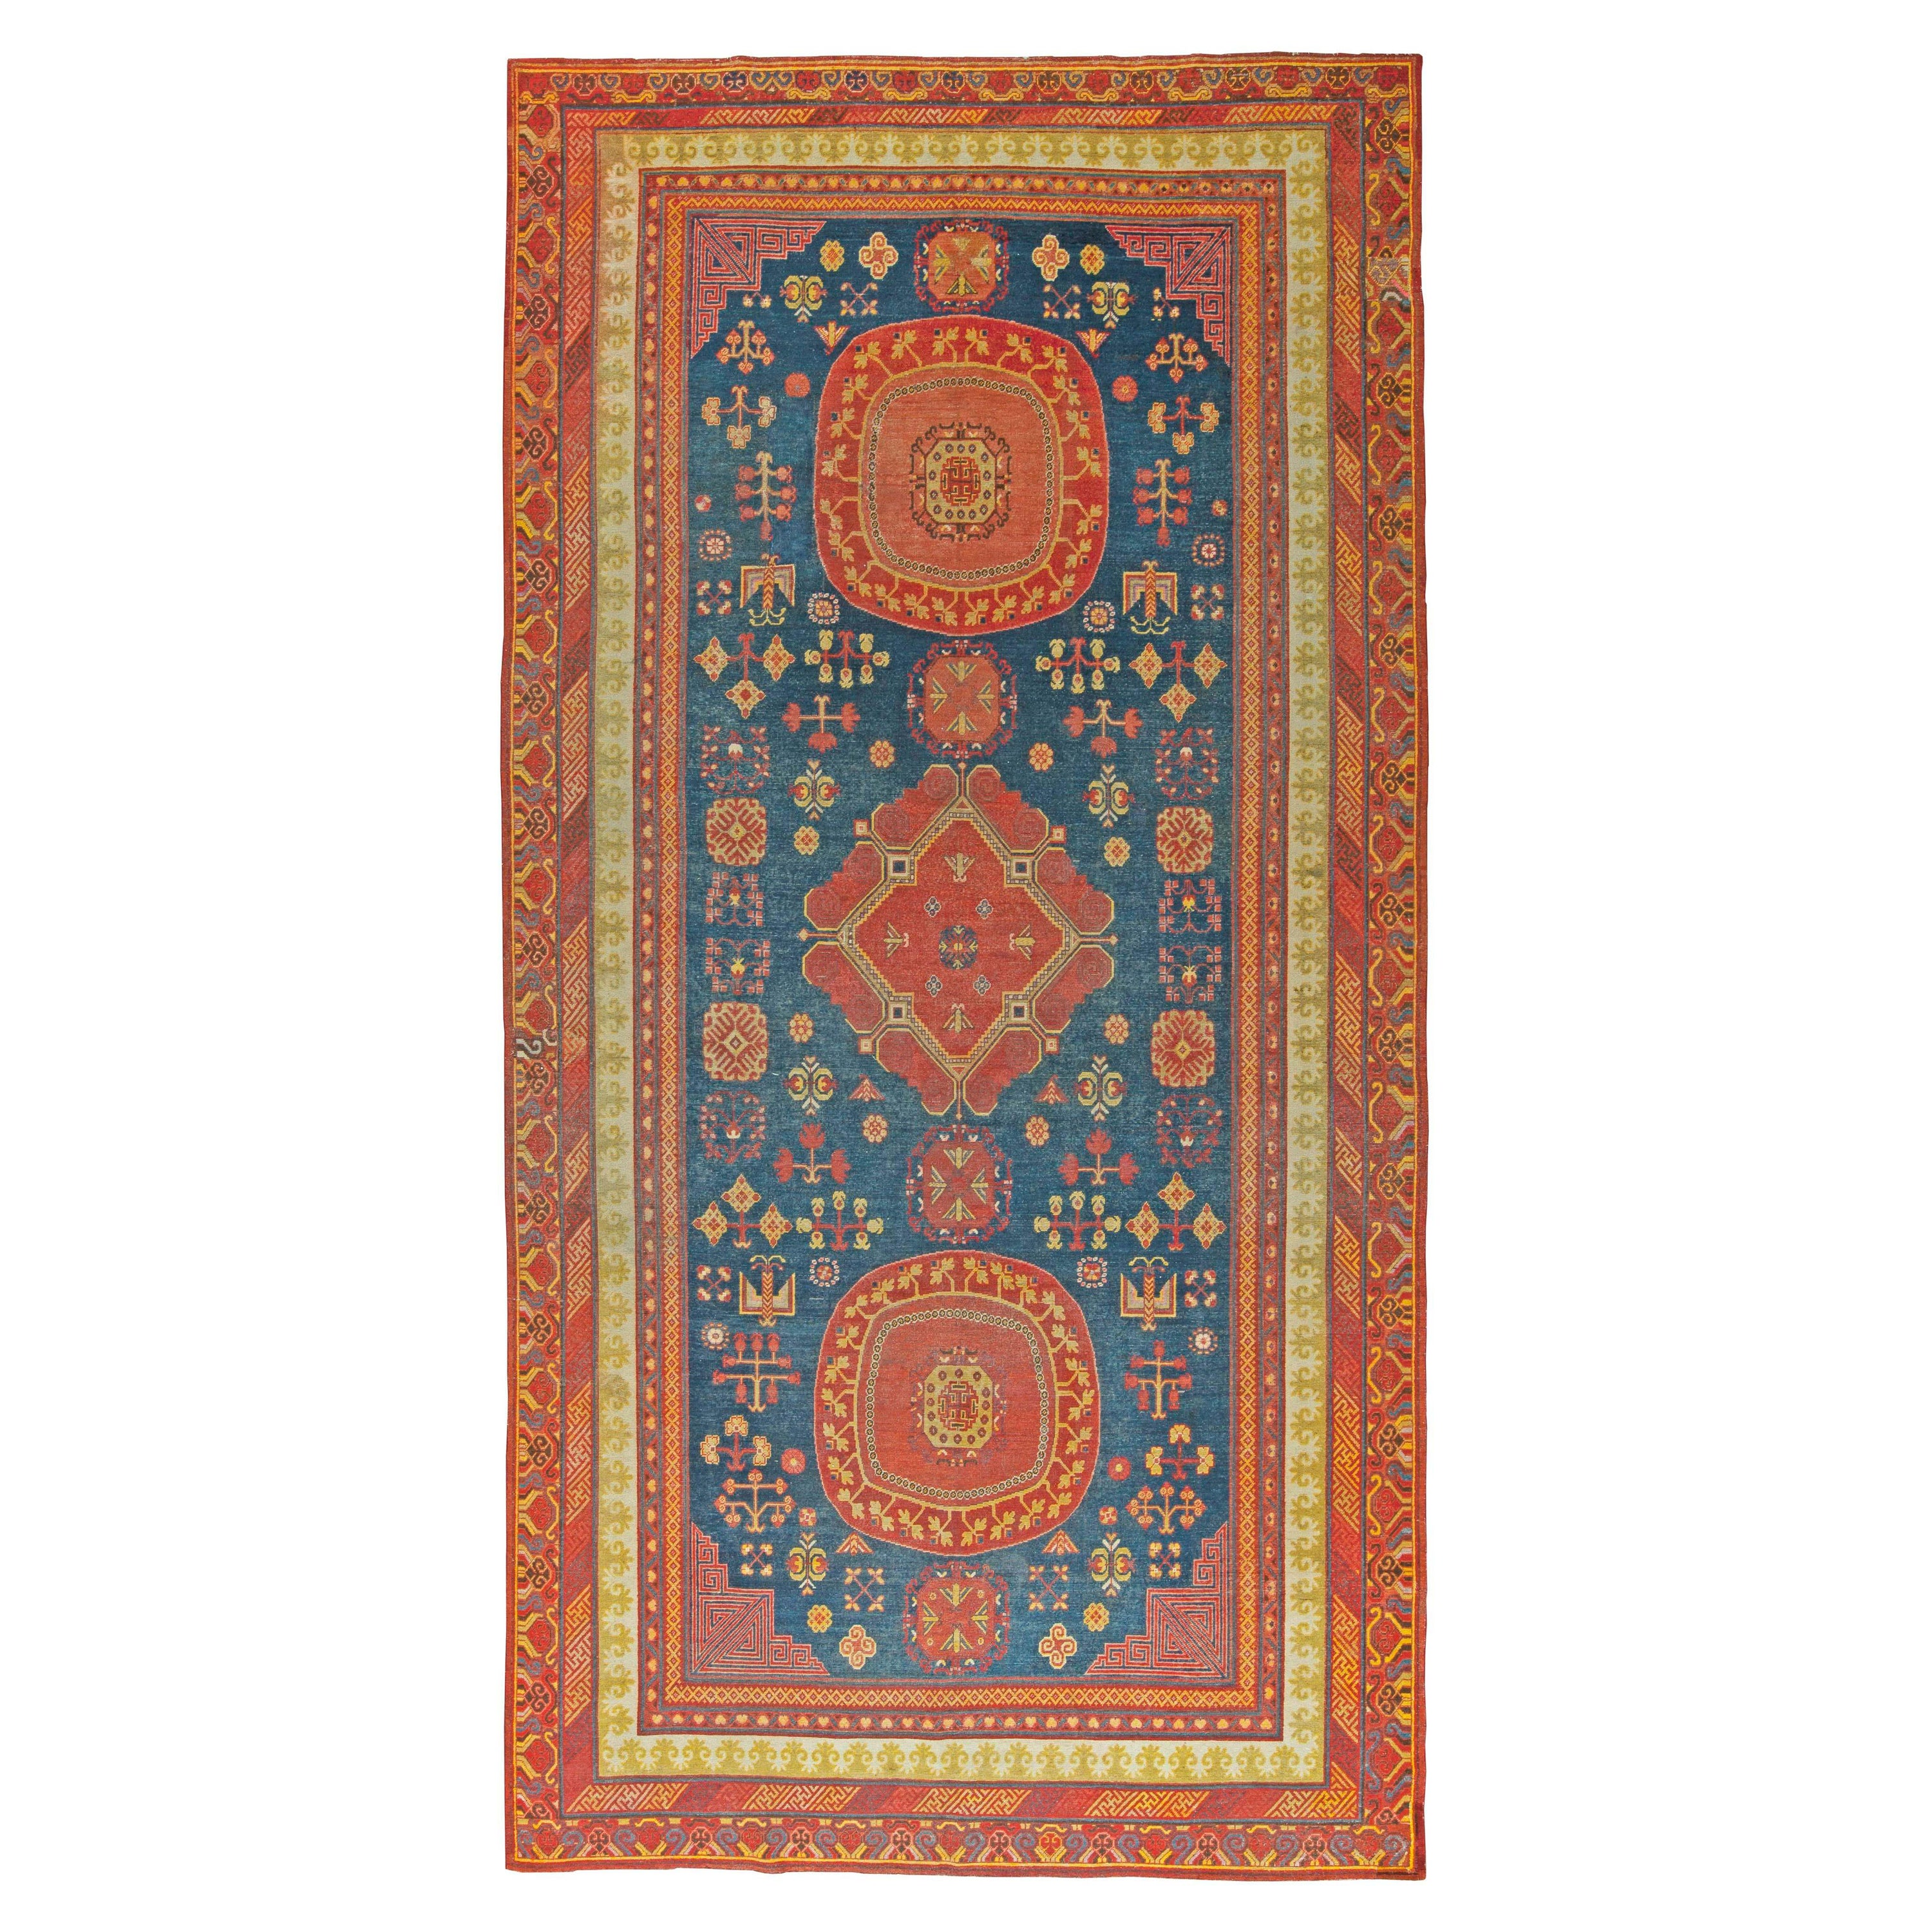 Samarkand-Teppich aus dem 19. Jahrhundert, rot und blau, handgefertigt